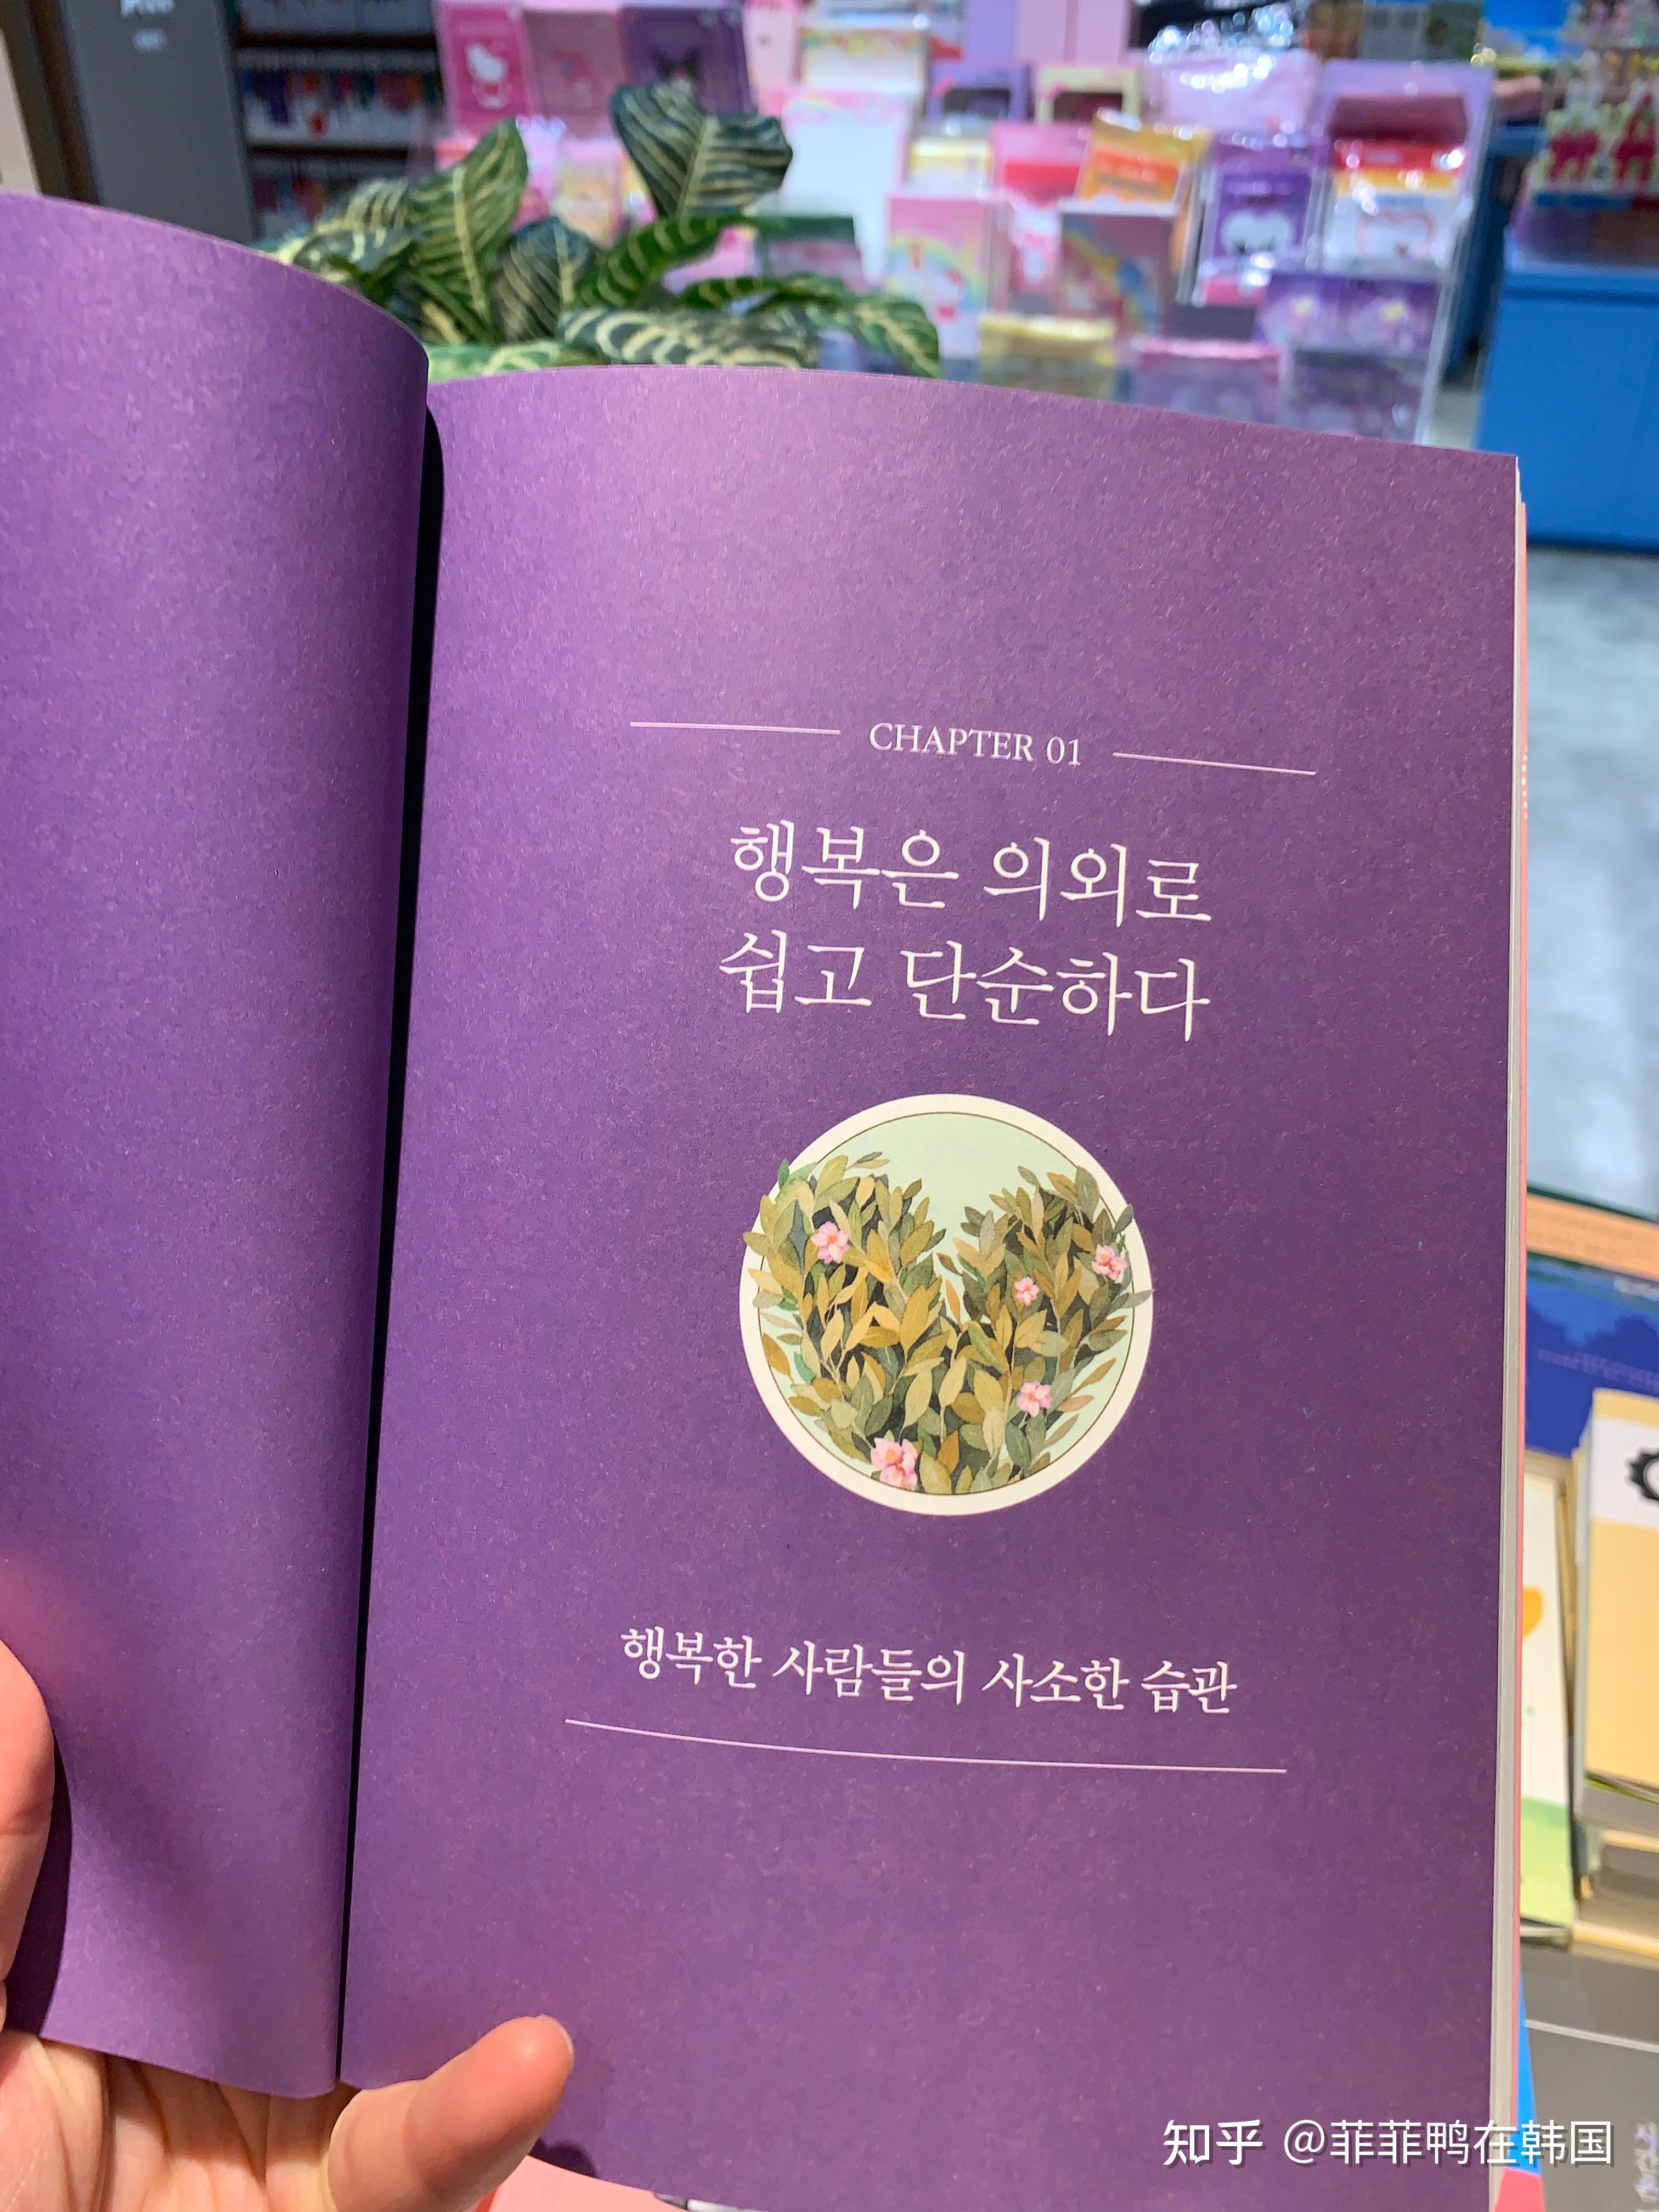 感动30万读者韩语书📖我选择了幸福 - 知乎